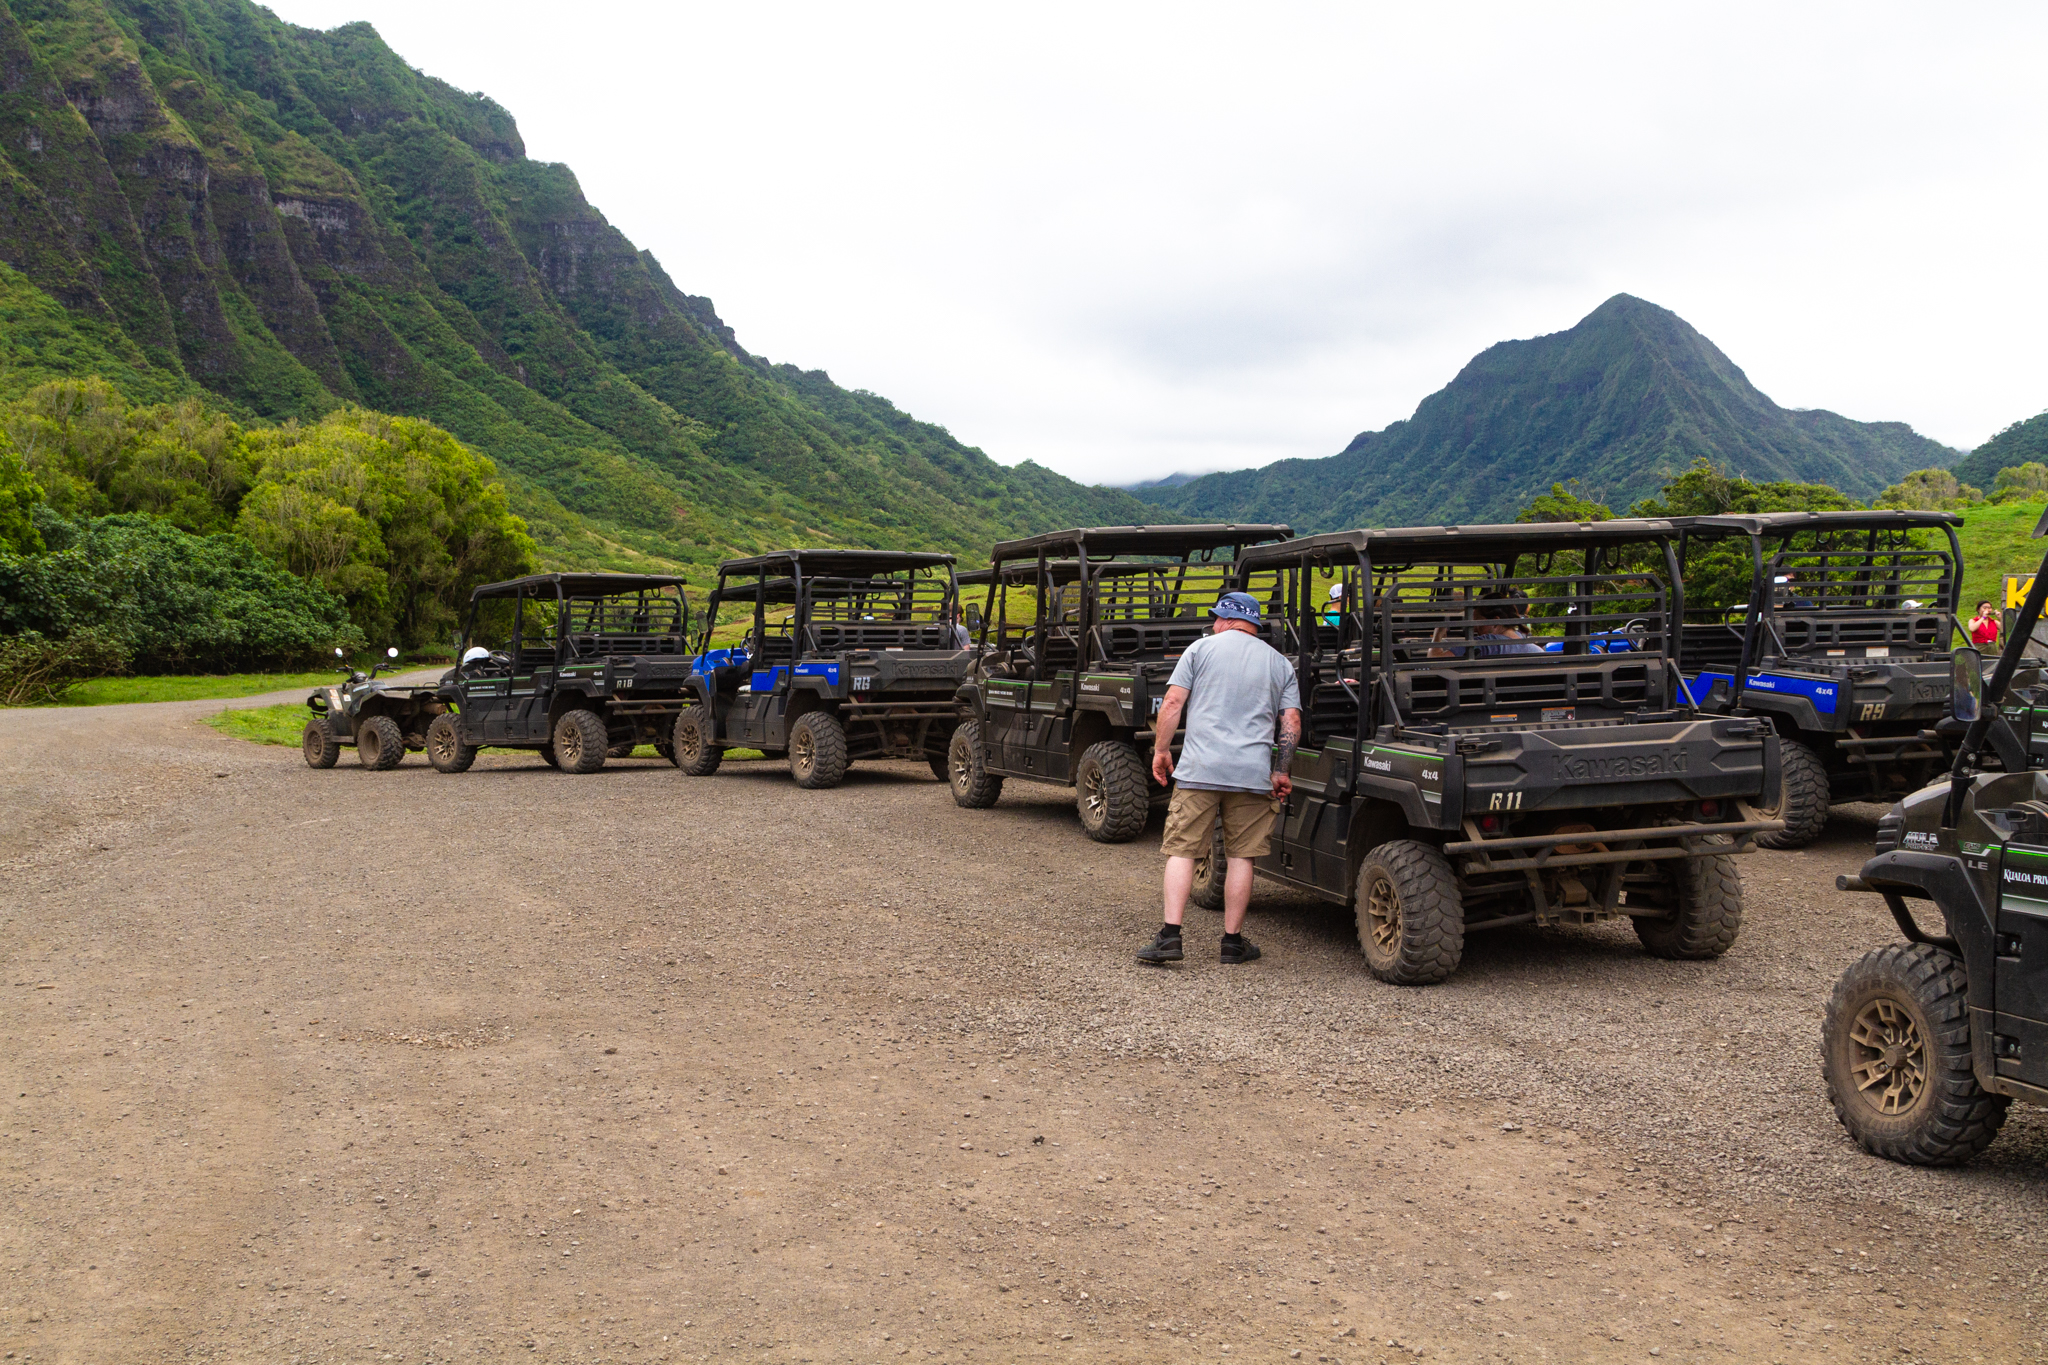 adventure guide to hawaii oahu and kauai press trip 2019 utv raptor tour at kualoa private nature reserve gp 9794